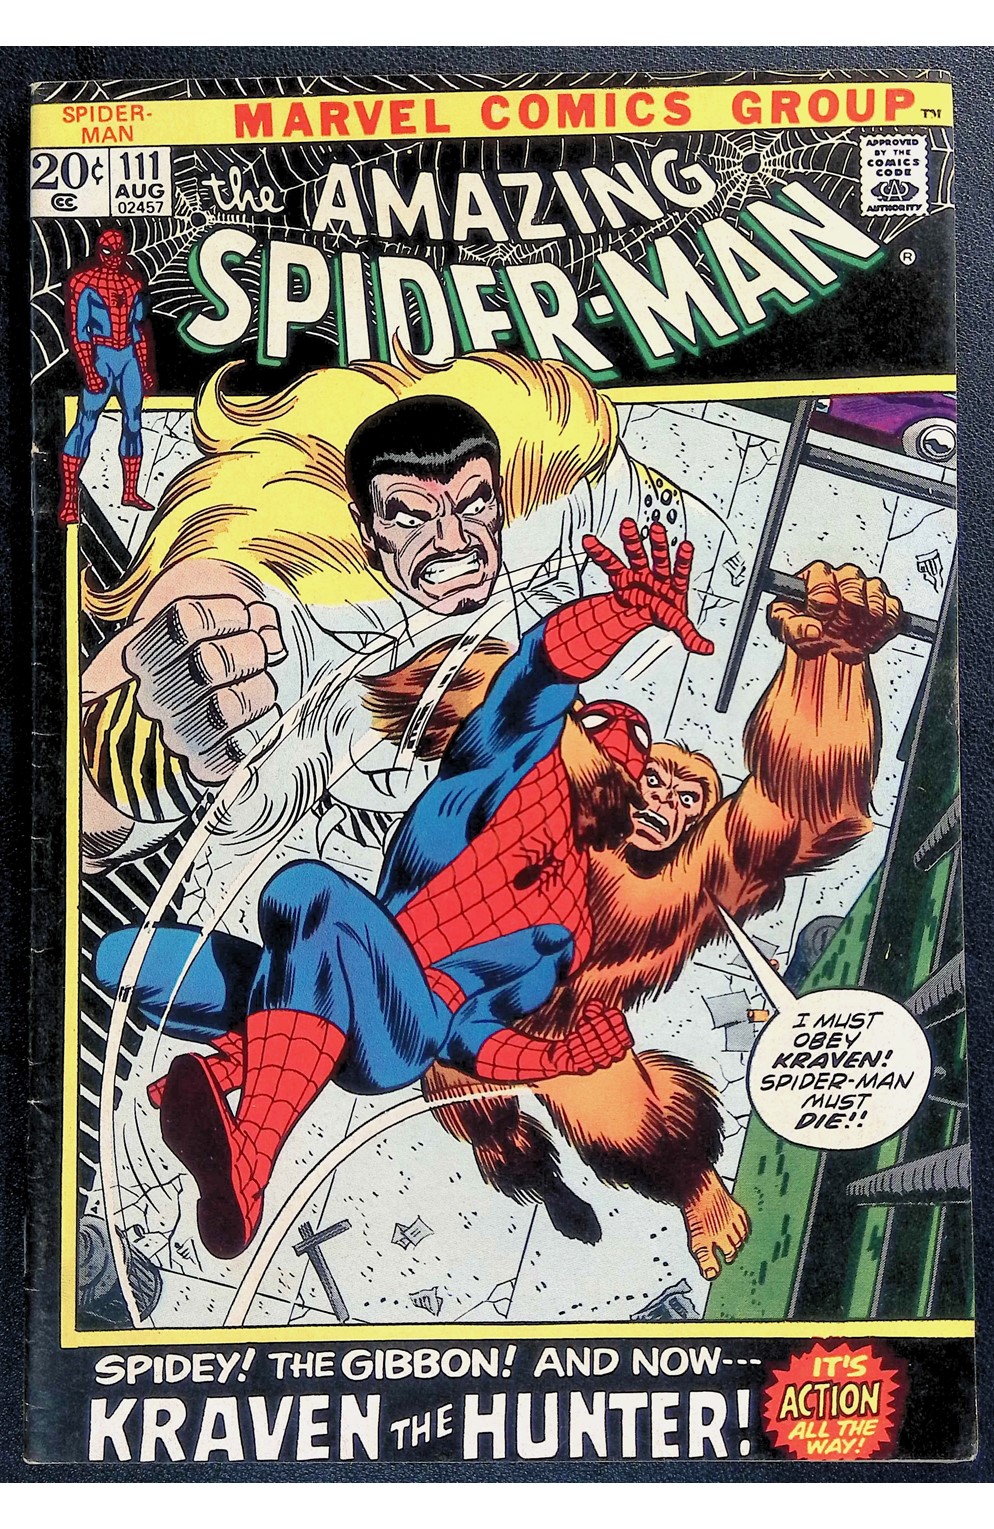 Amazing Spider-Man #111 - 1972